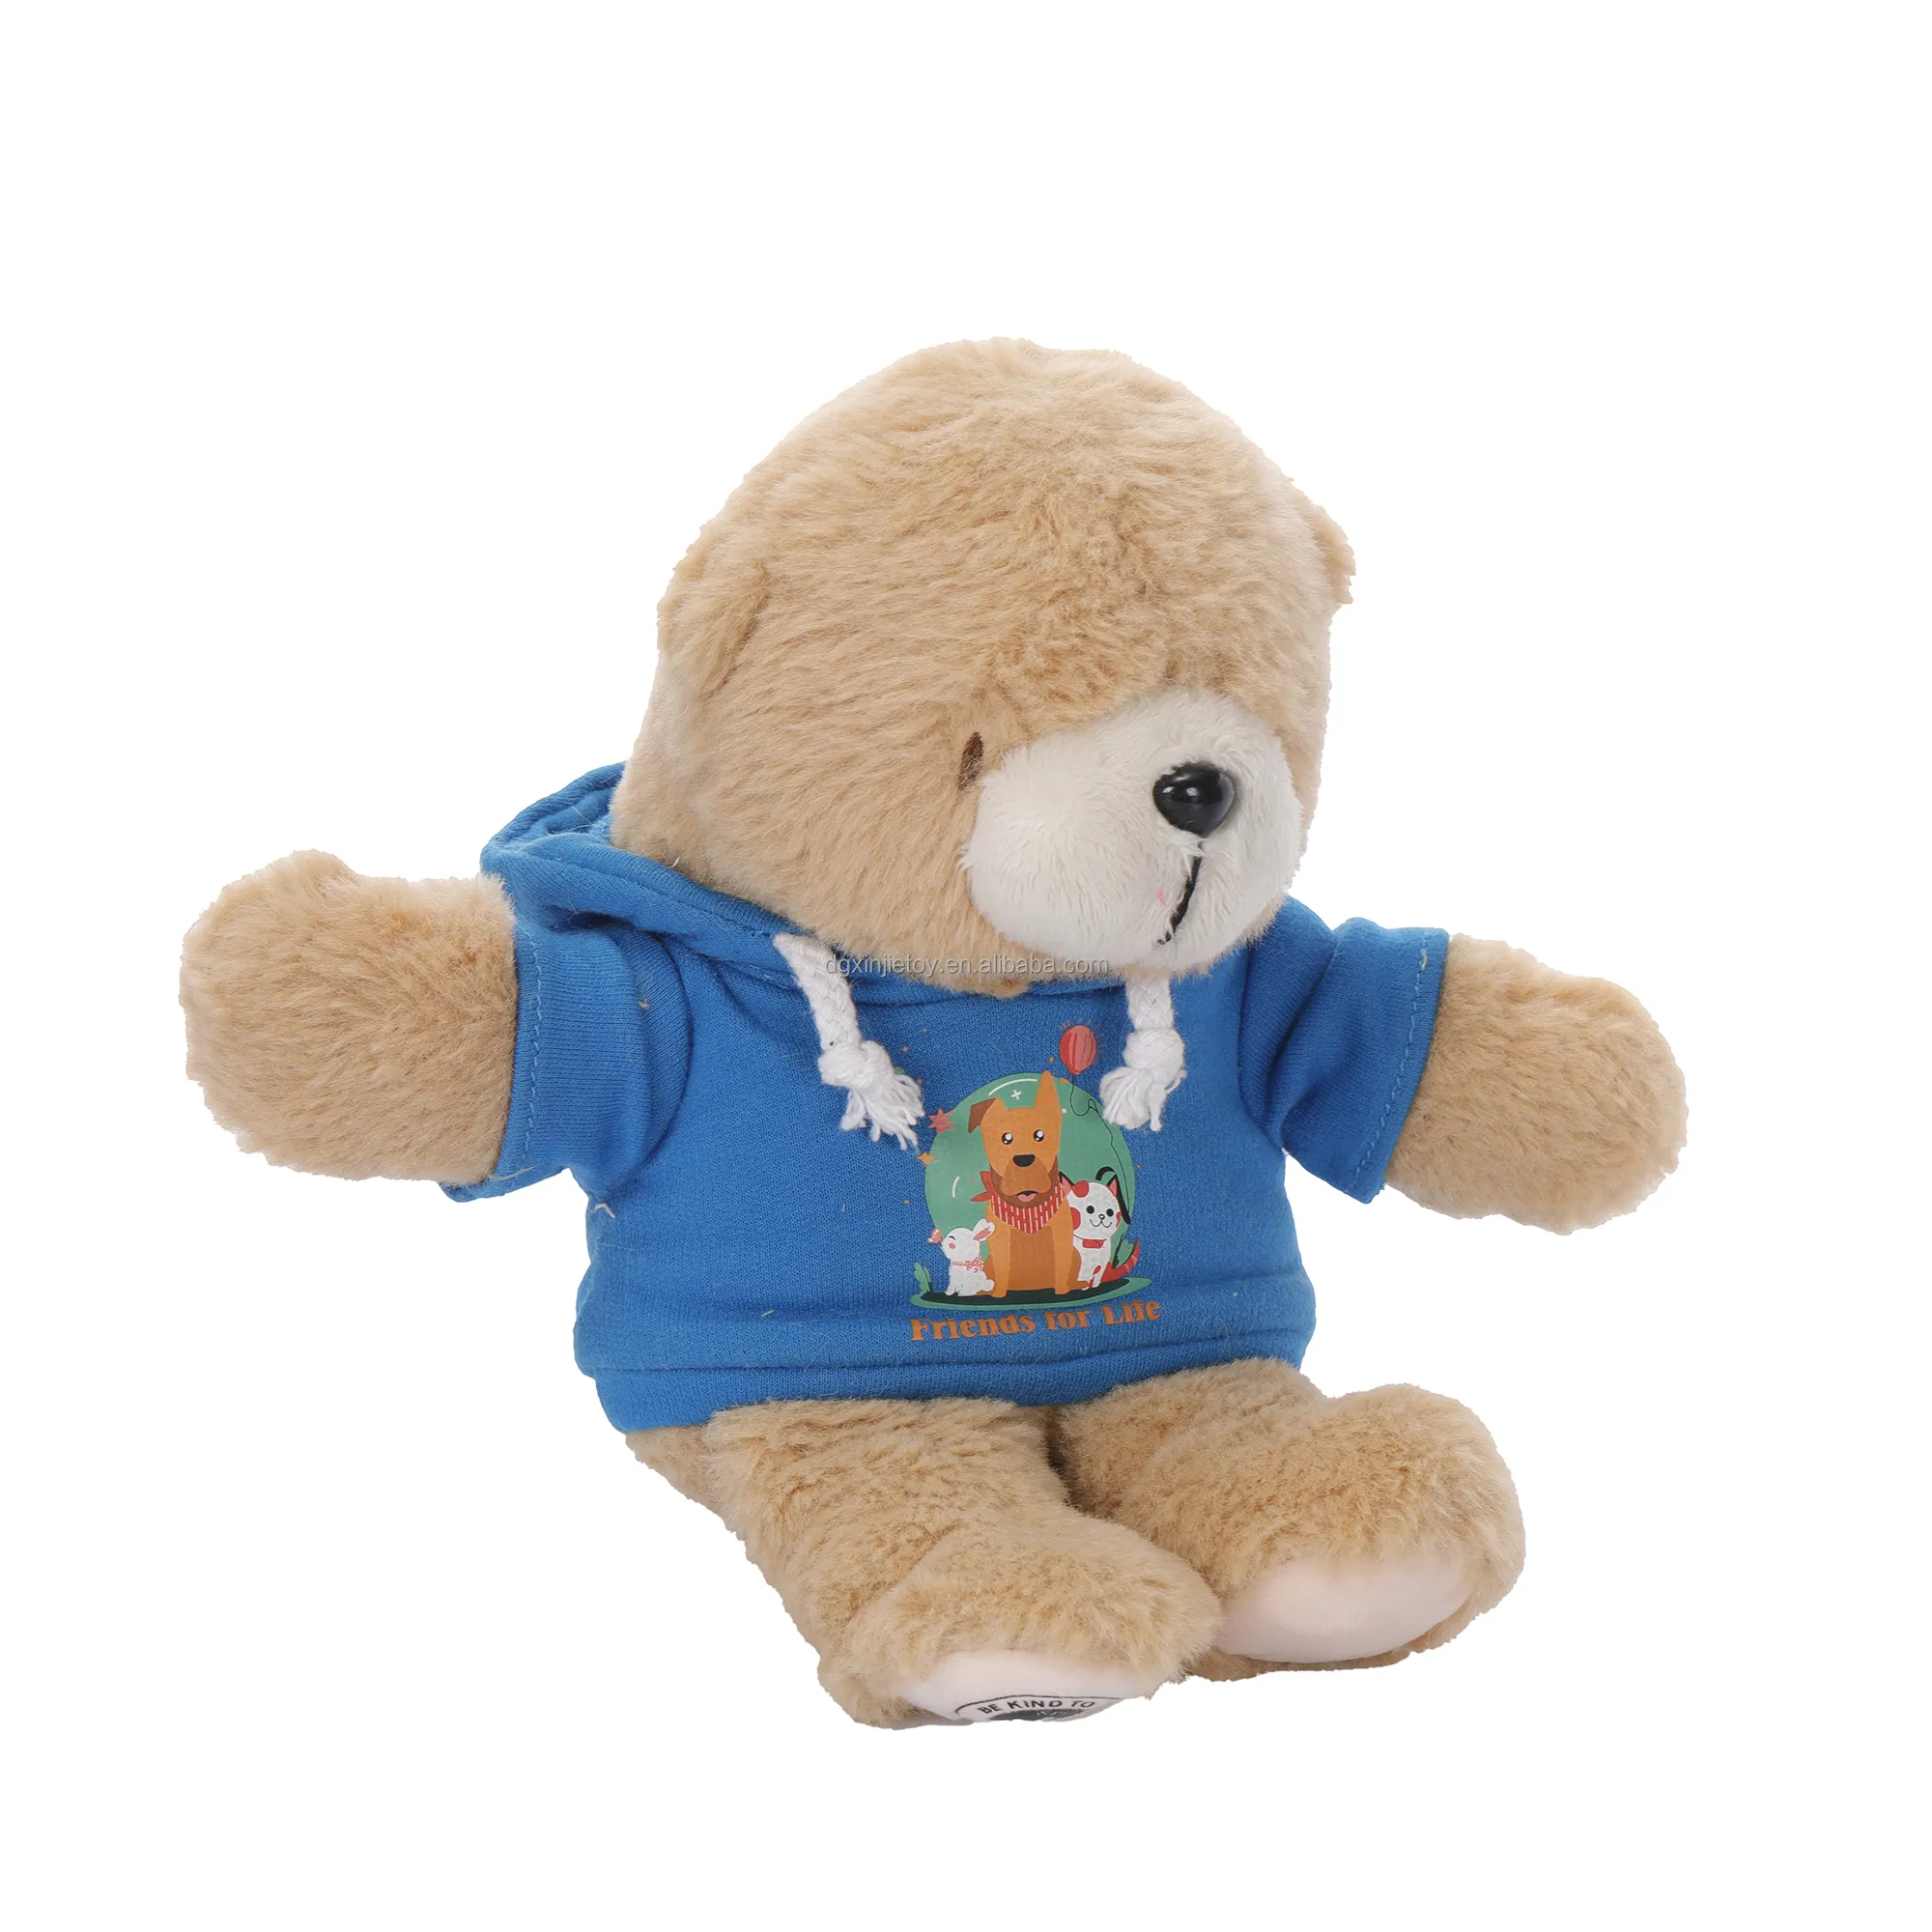 Quente popular teddy bear com moletom encapuzado pelúcia urso animal brinquedos personalizado feito brinquedo macio